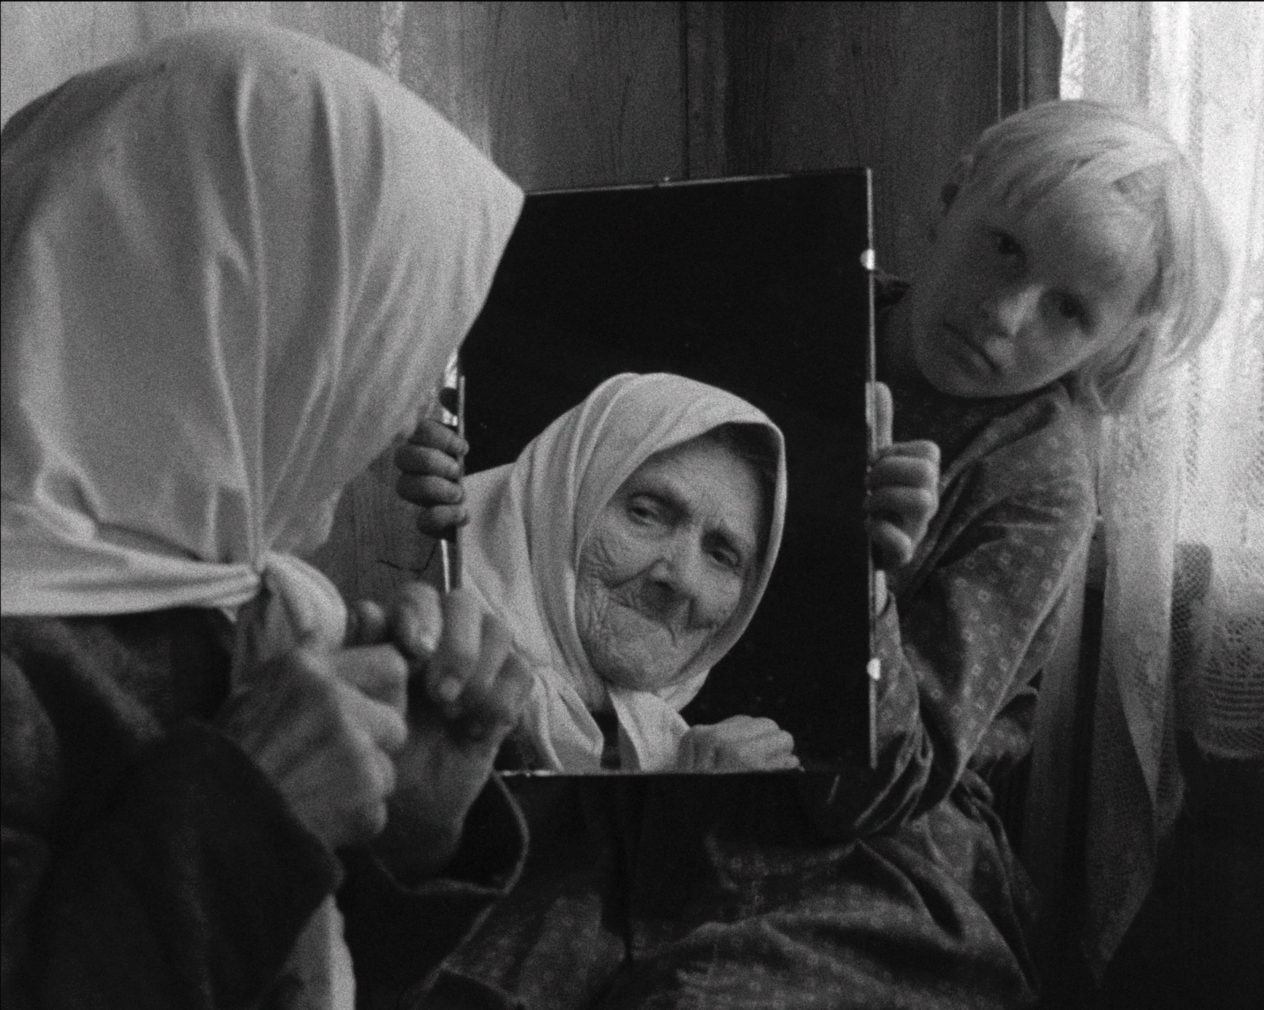 cena de um filme onde uma criança segura um espelho onde é refletida a imagem de uma senhora idosa